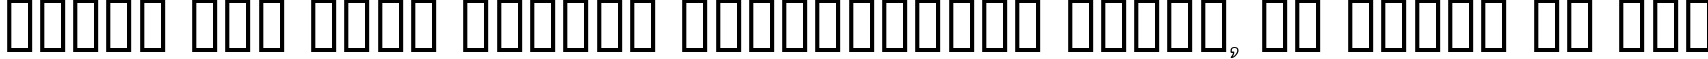 Пример написания шрифтом Dumbledor 3 Outline текста на русском